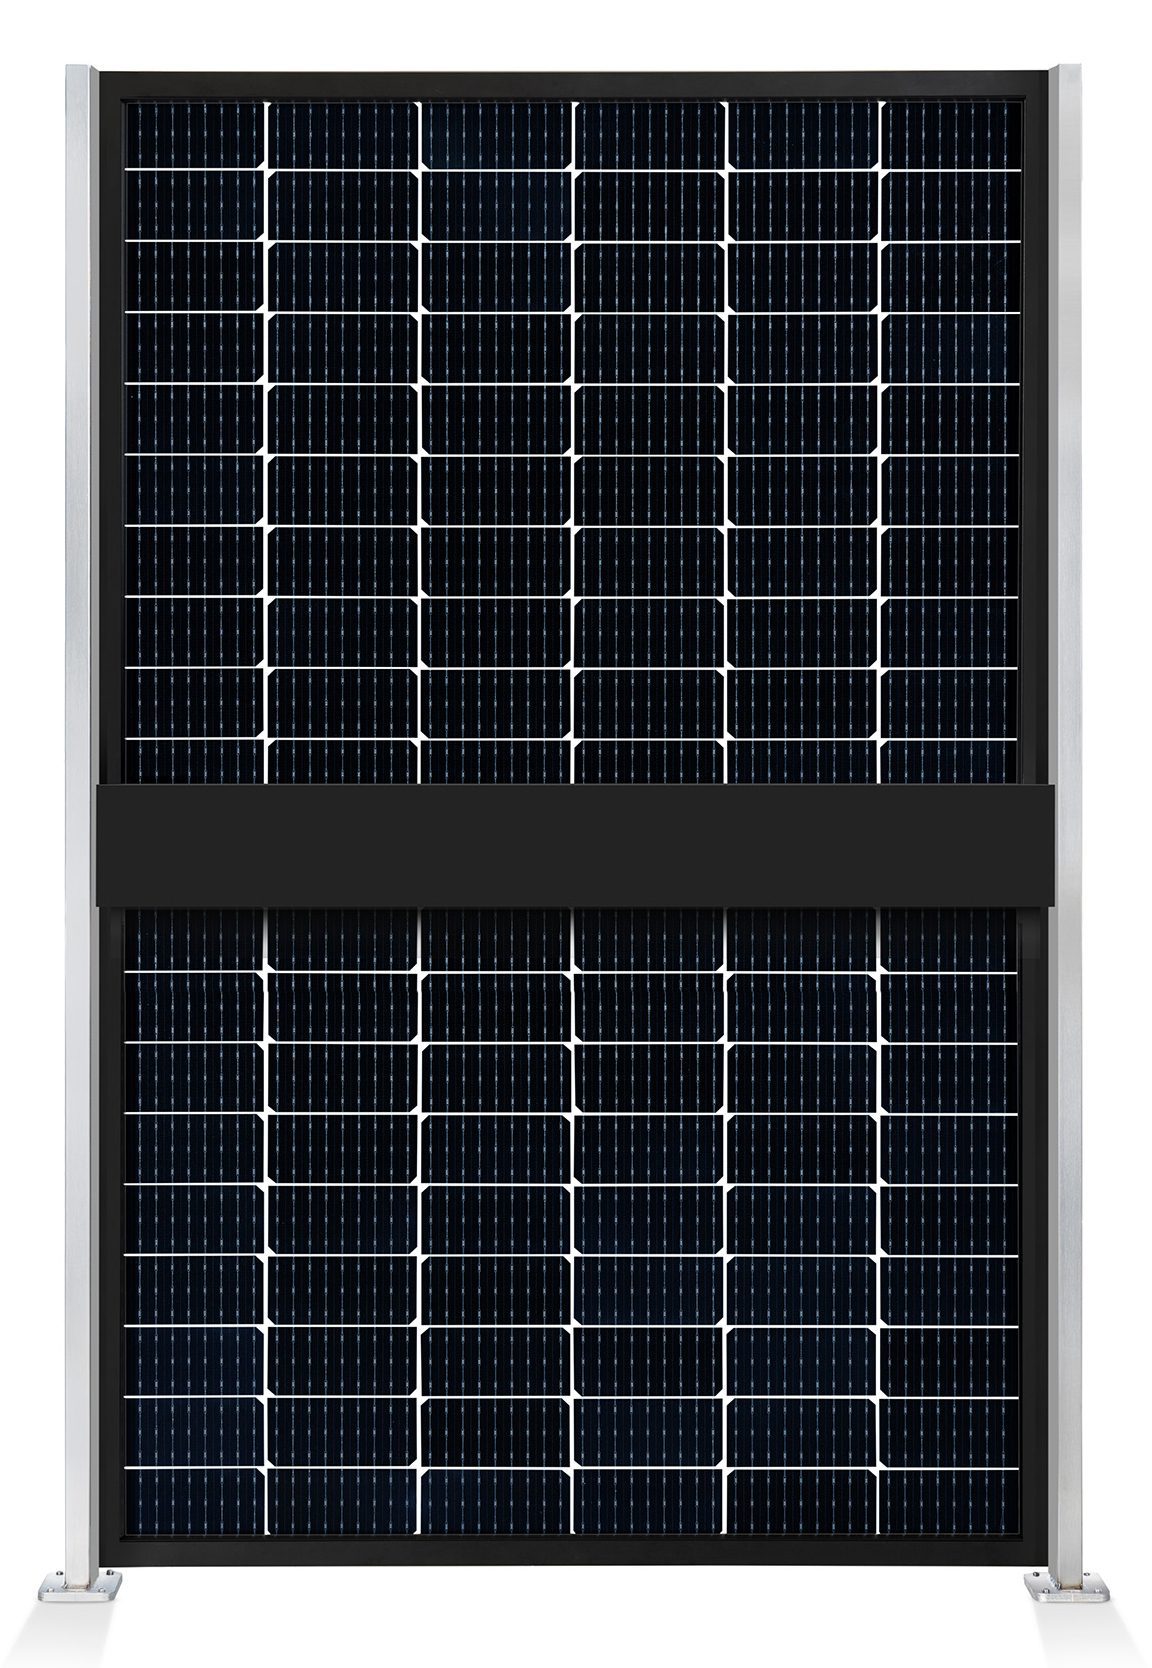 ausschnitt_0000_element-solar-sichtschutz-pv-photovoltaik-zaun-collection-hutter-panel-transparent-pfosten-edelstahl-rue